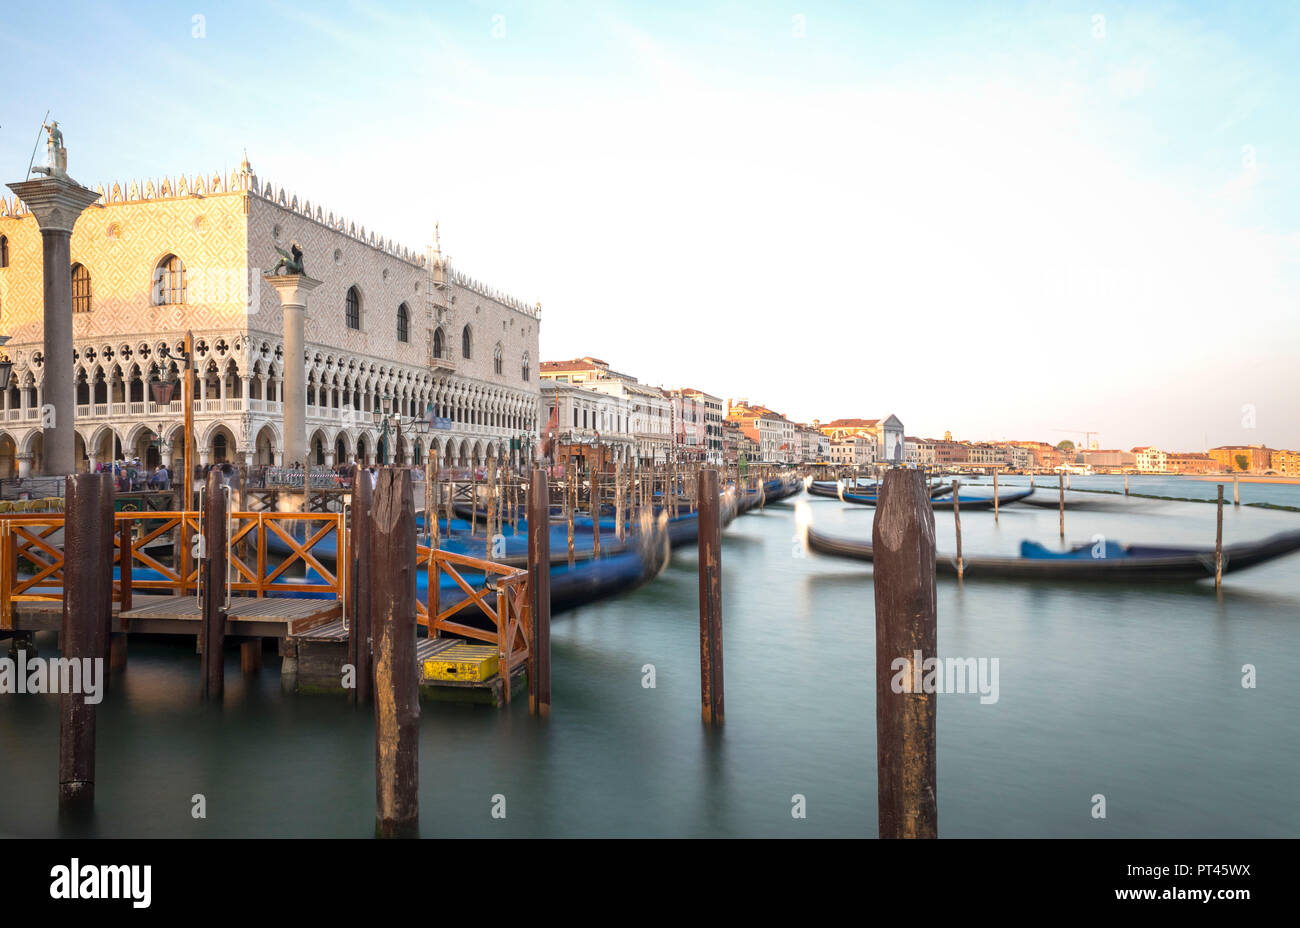 View of Venice district, Veneto, Italy Stock Photo